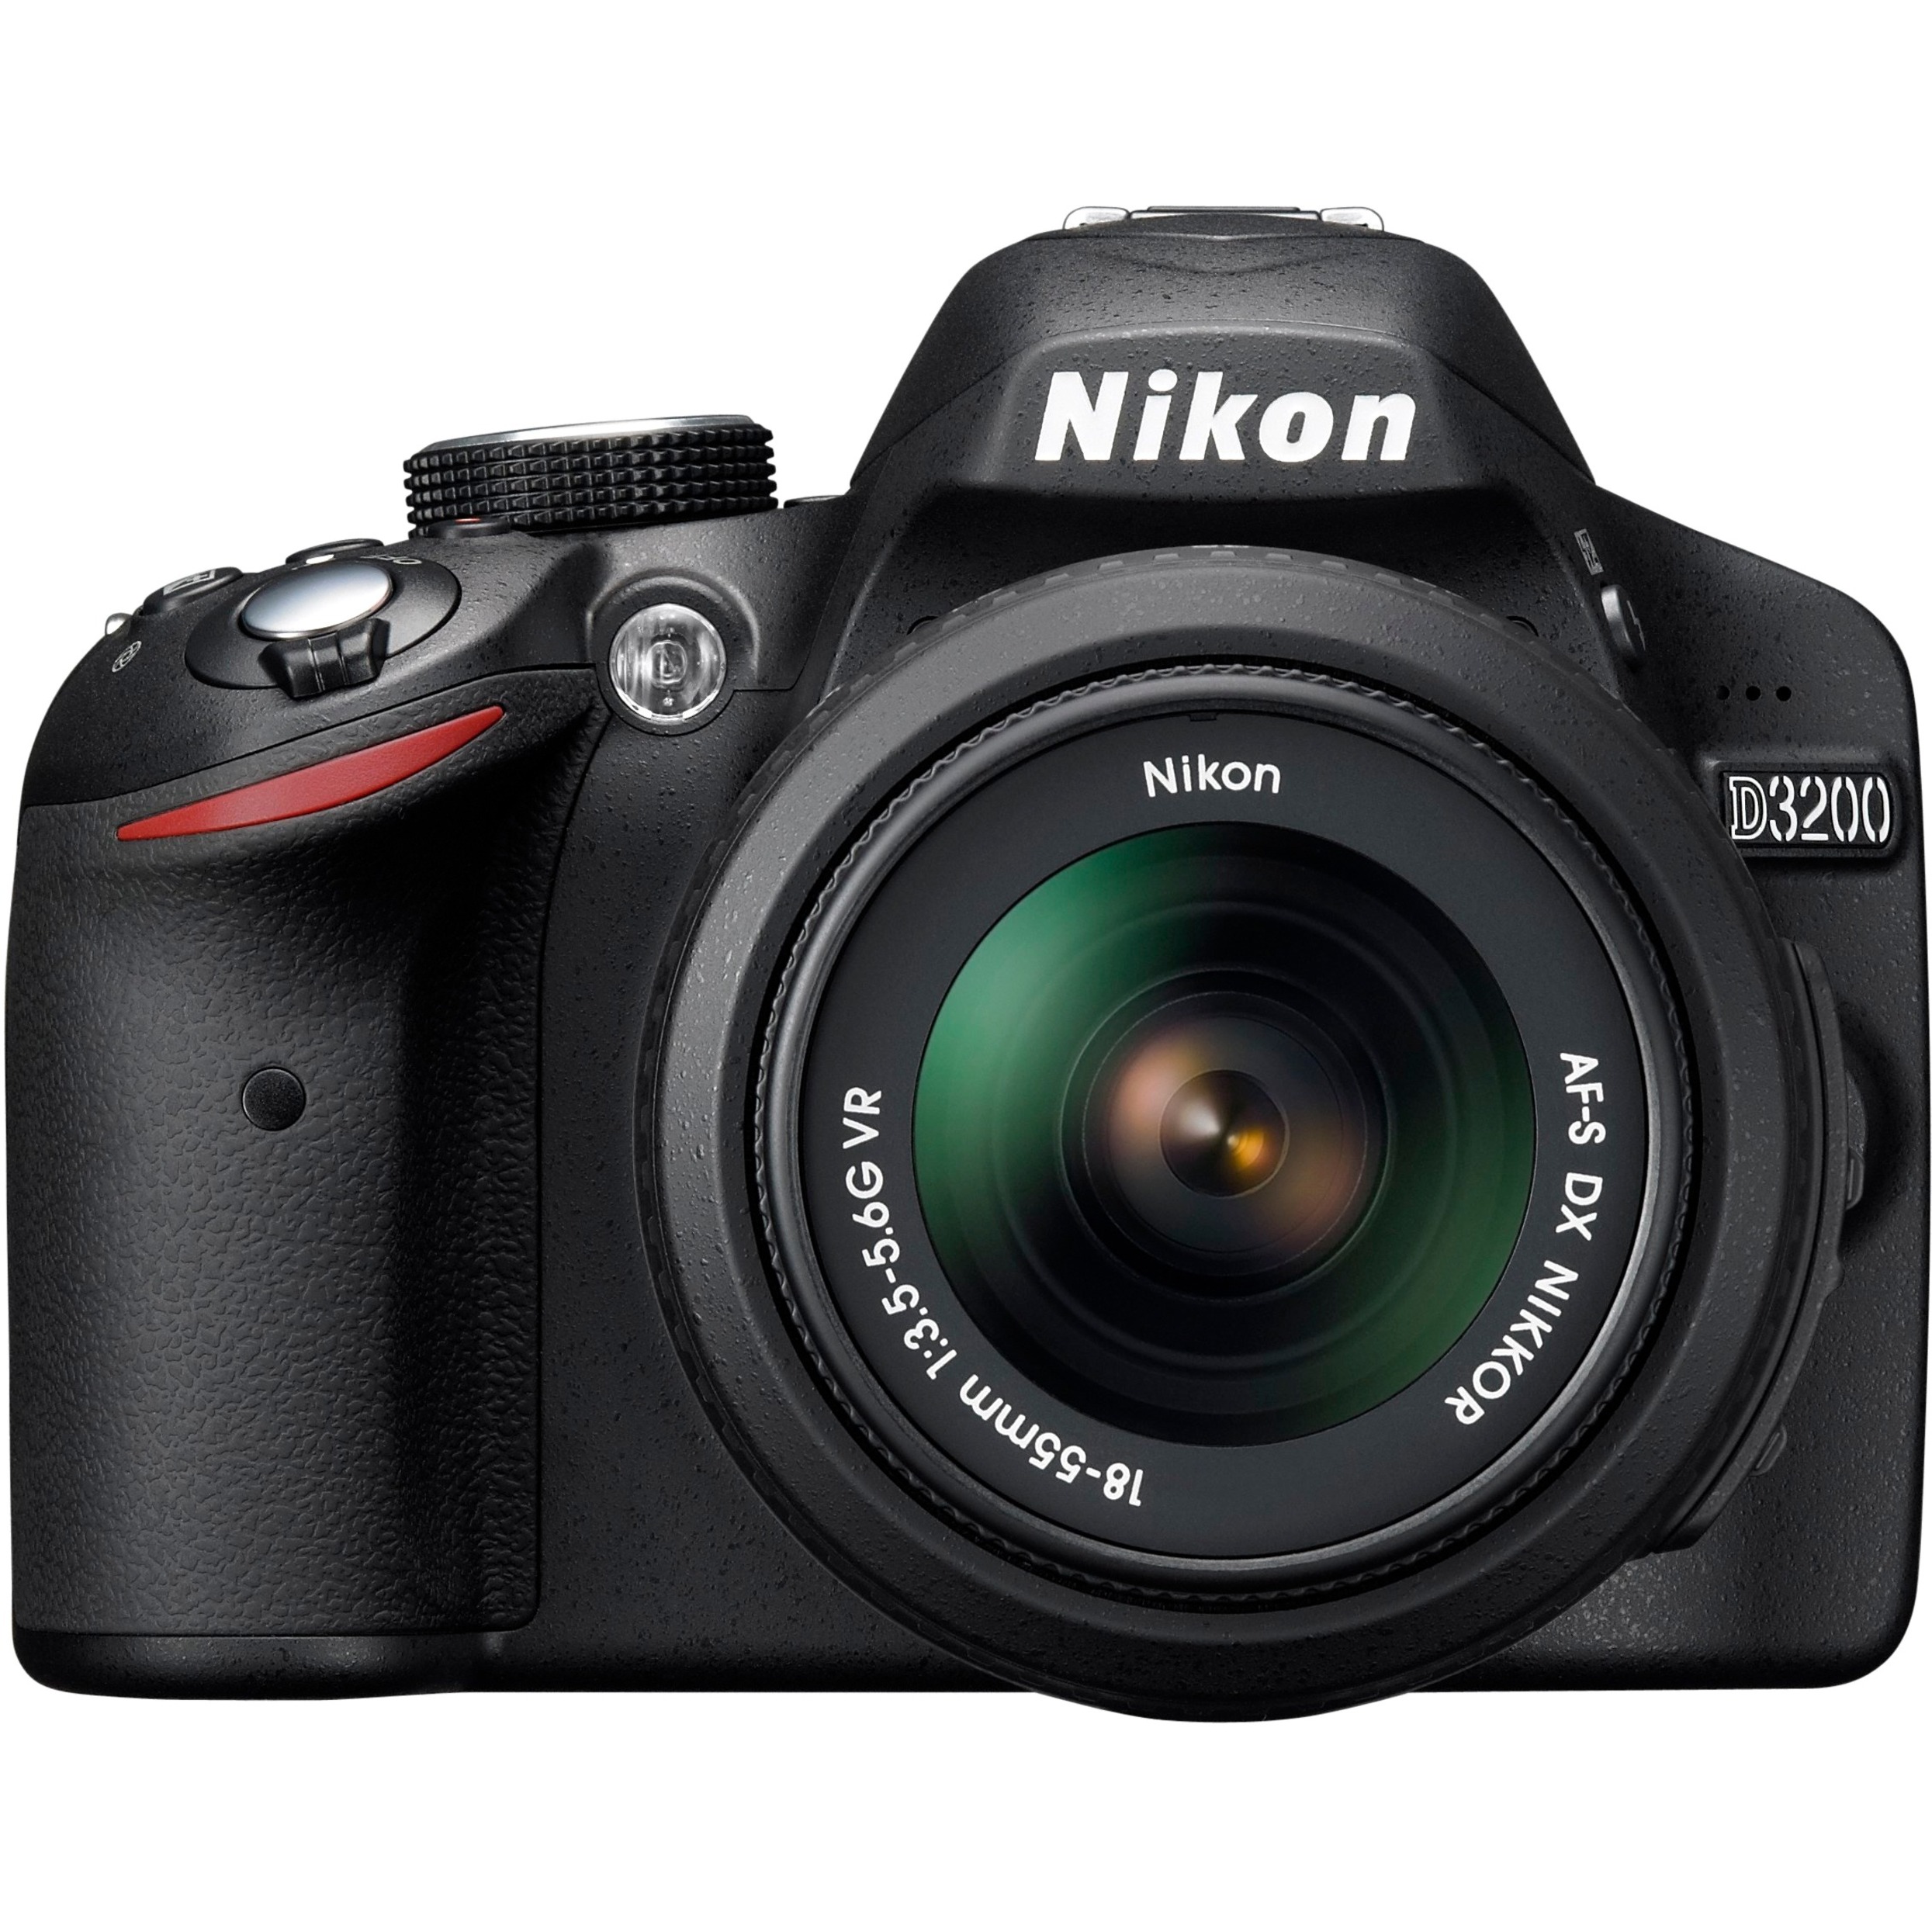 Nikon D3200 24.2 Megapixel Digital SLR Camera with Lens, 0.71", 2.17" (Lens 1), 2.17", 7.87" (Lens 2), Black - image 1 of 6